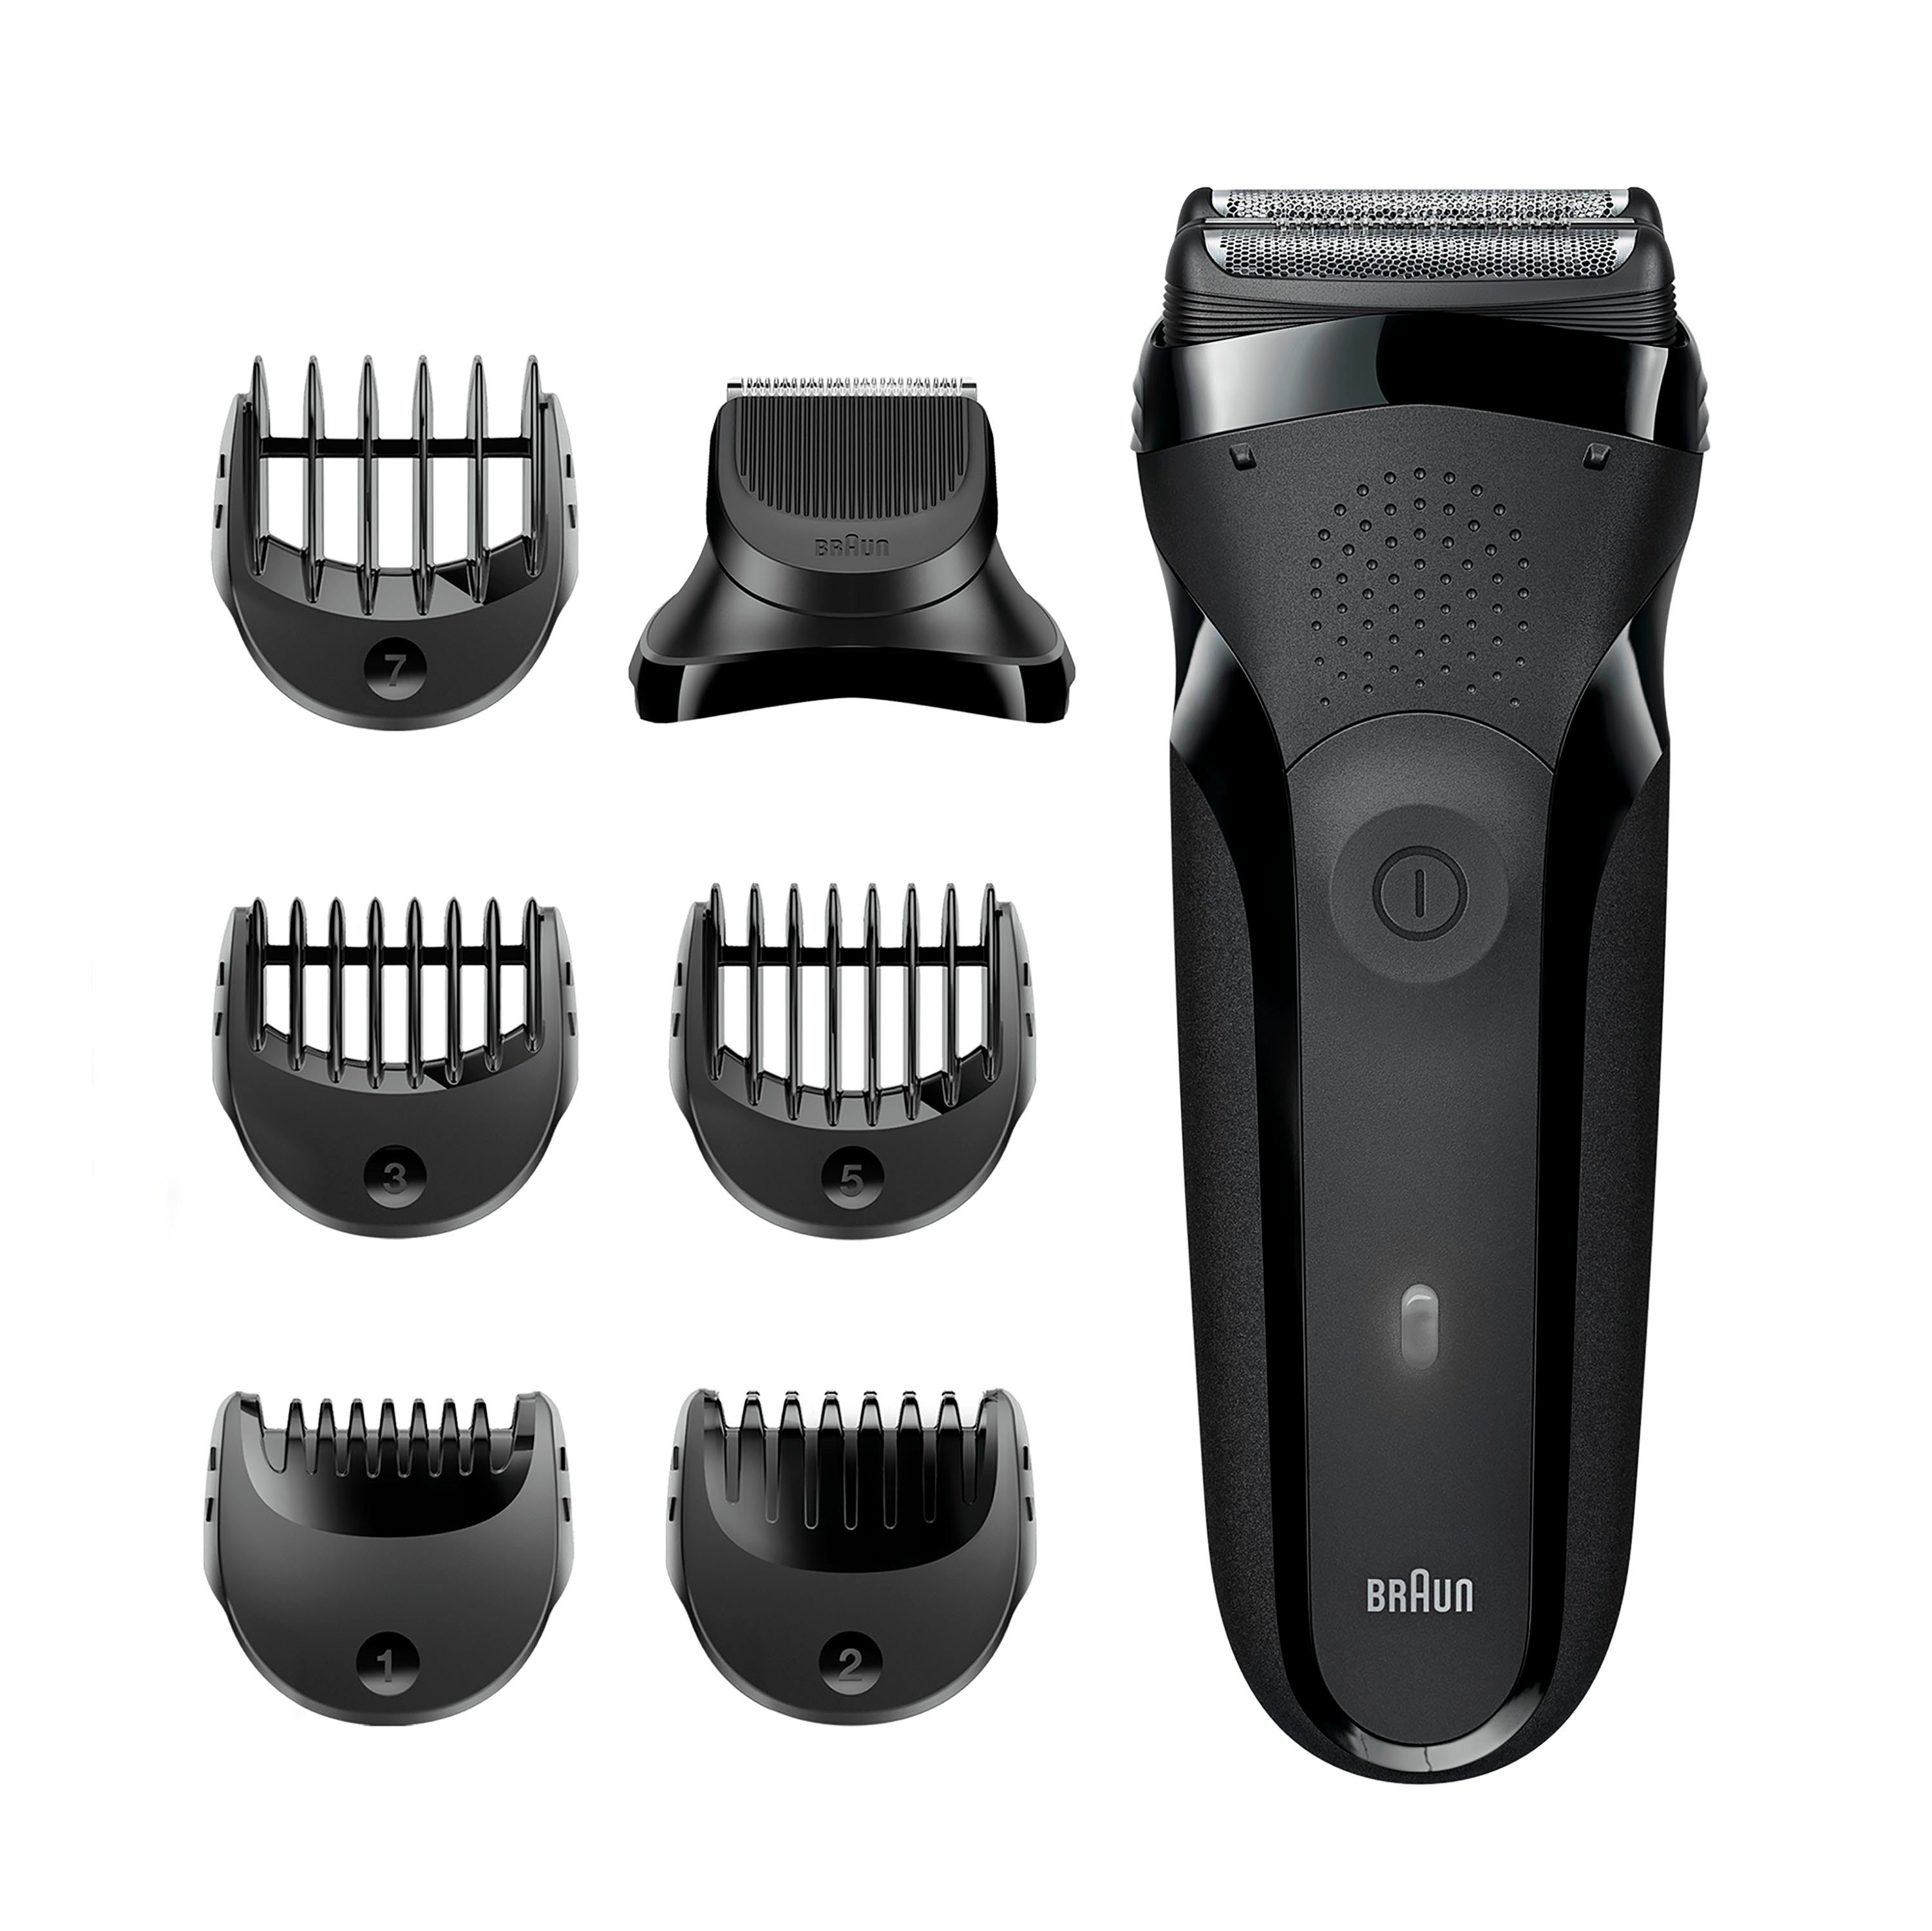 3 Elektrorasierer Braun Series Shave&Style 300BT, Aufsätze: 5